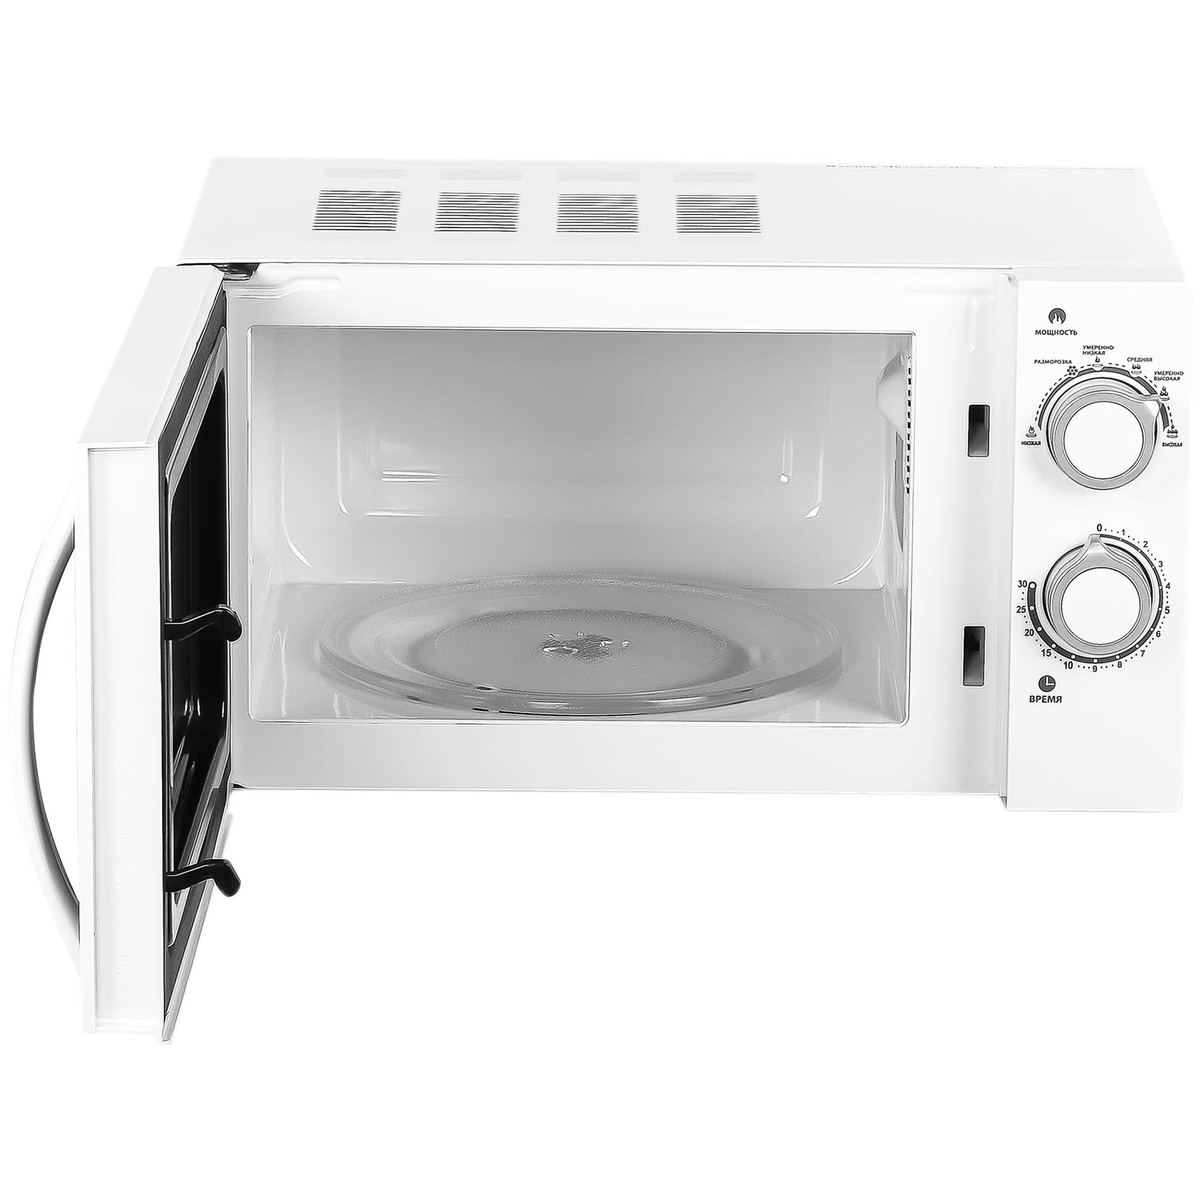 Микроволновая печь Galanz MOS-2005MW, белый